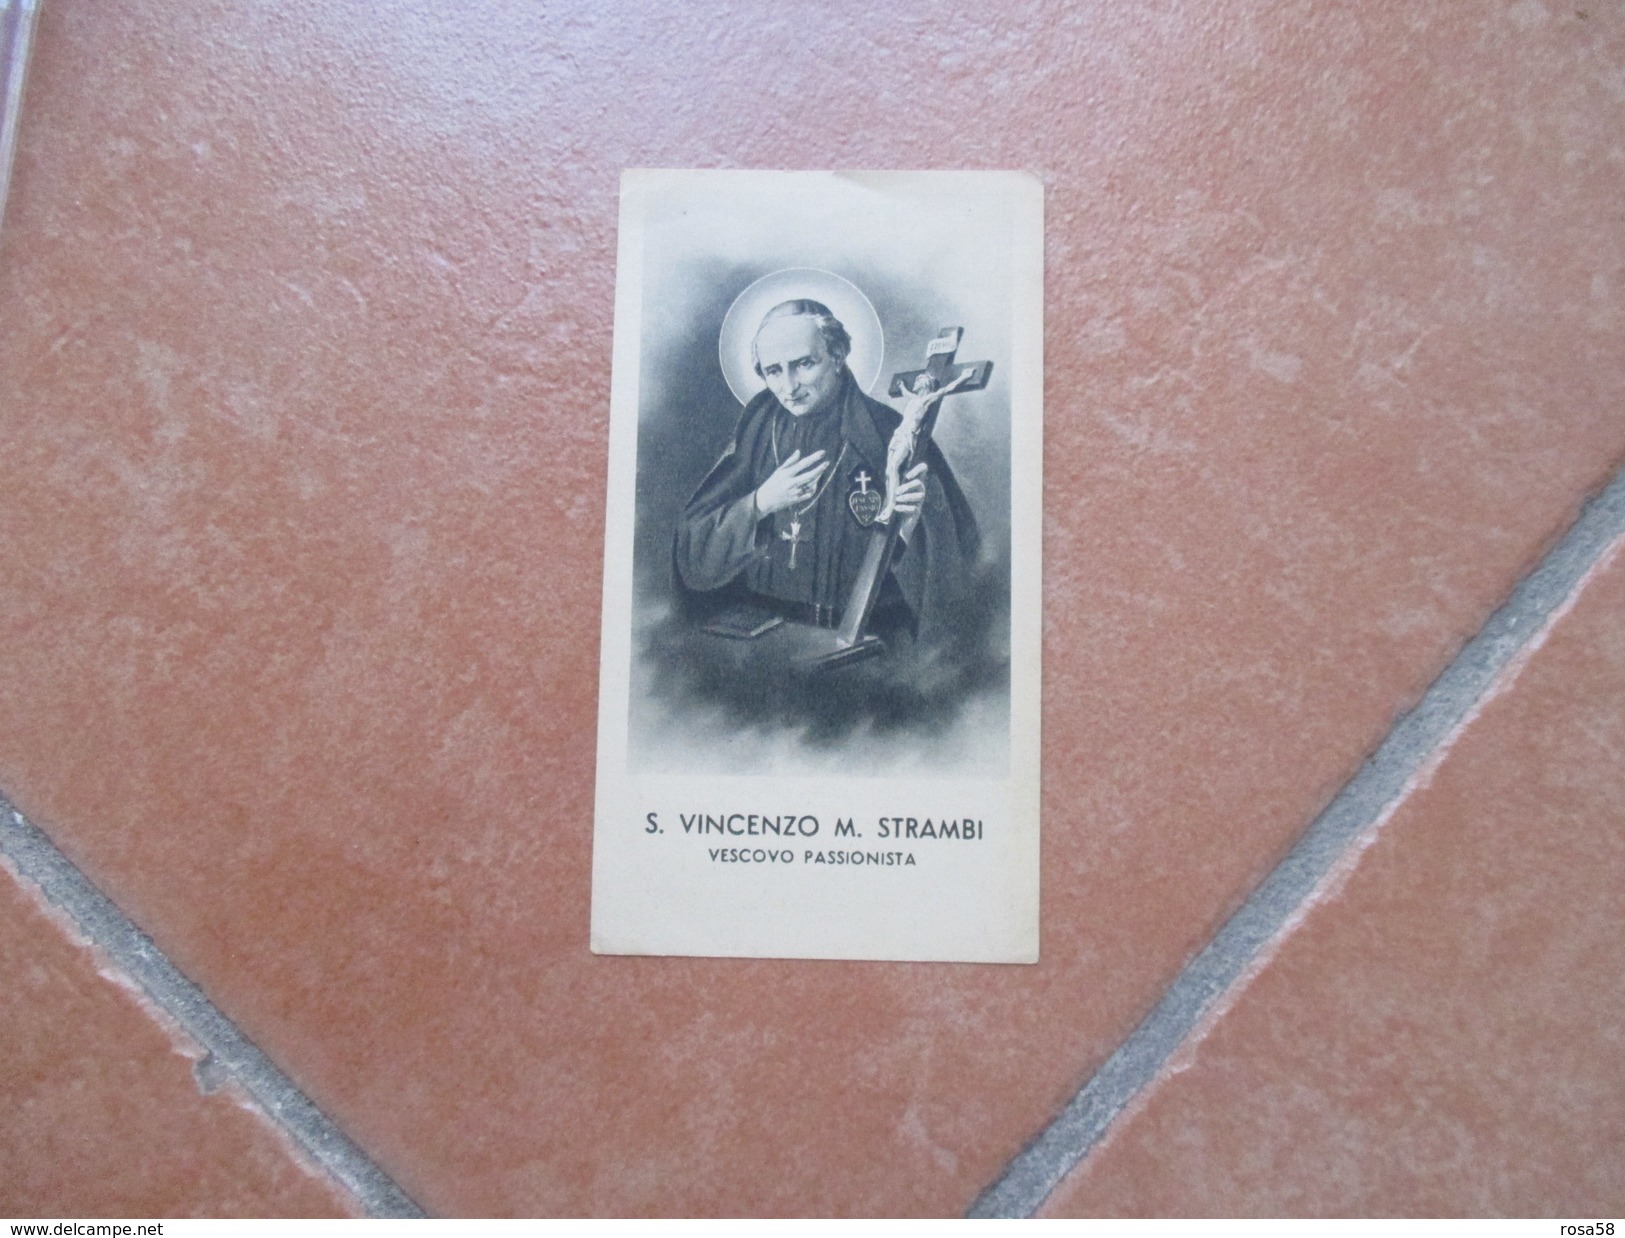 CRISTIANESIMO S.Vincenzo M.Strambi Vescovo Passionista Edizione Zincografica Firenze - Images Religieuses